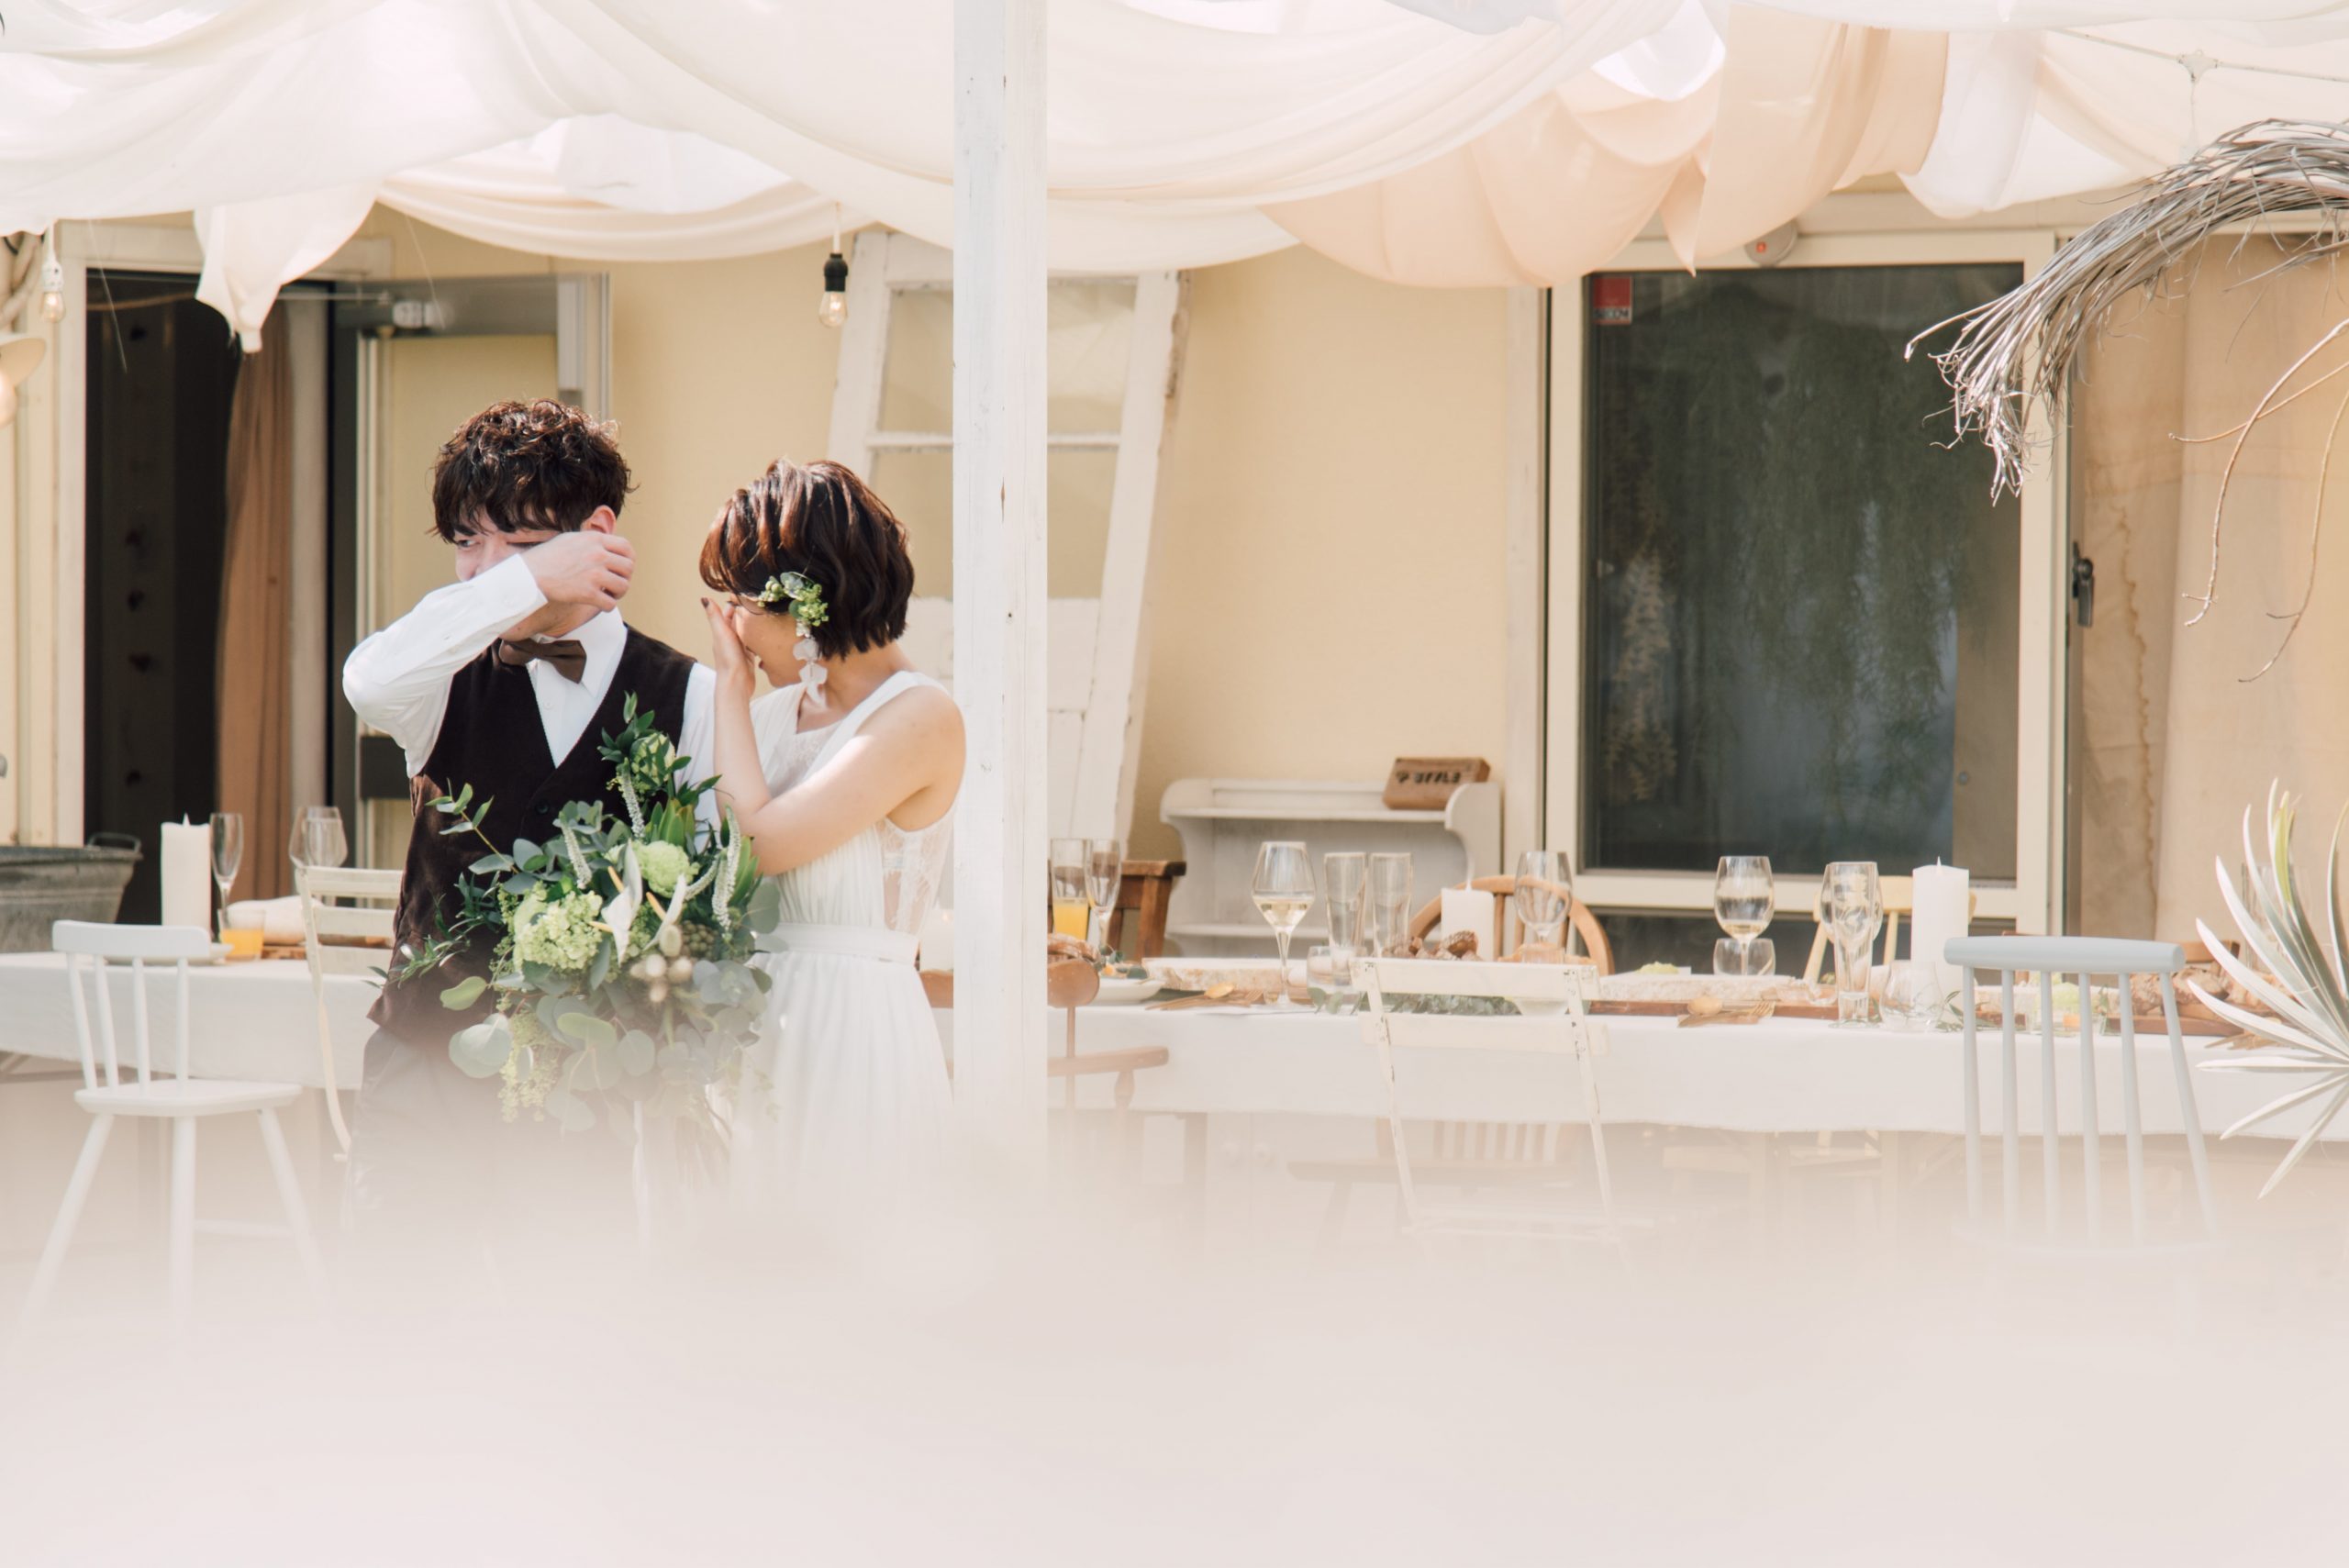 P-style weddingがプロデュースした沖縄での家族婚